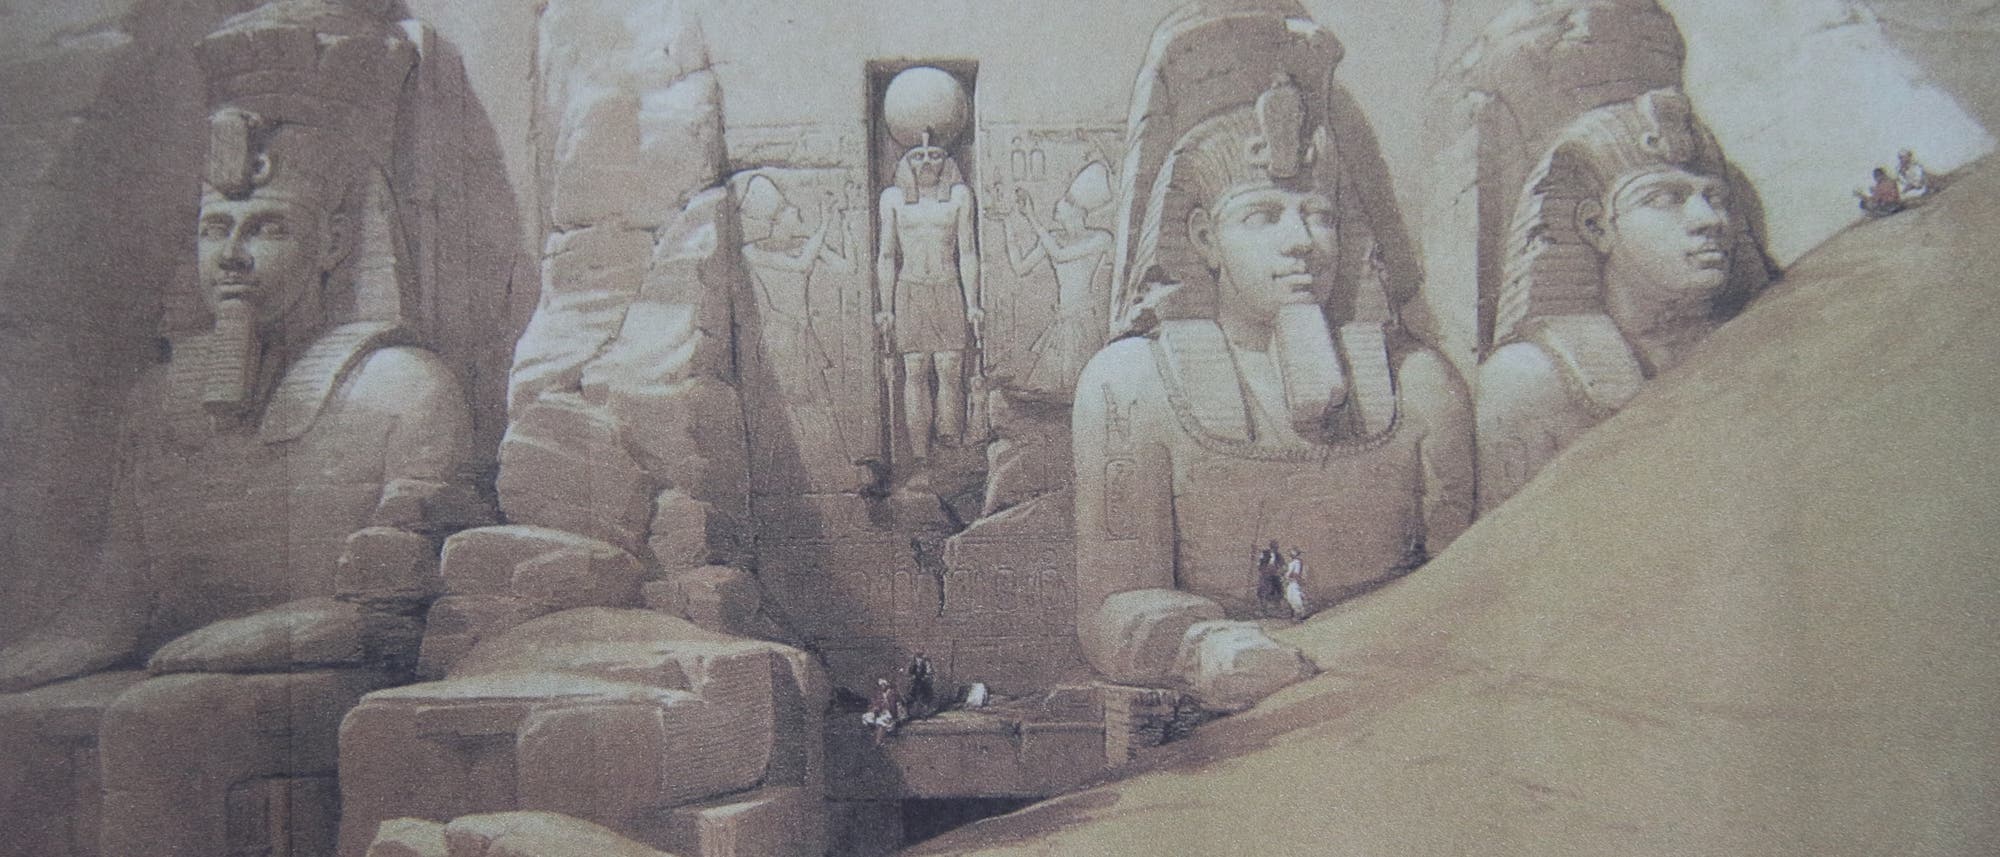 Zeichung der Monumentalstatuen vor dem Ramses-Tempel von Abu Simbel